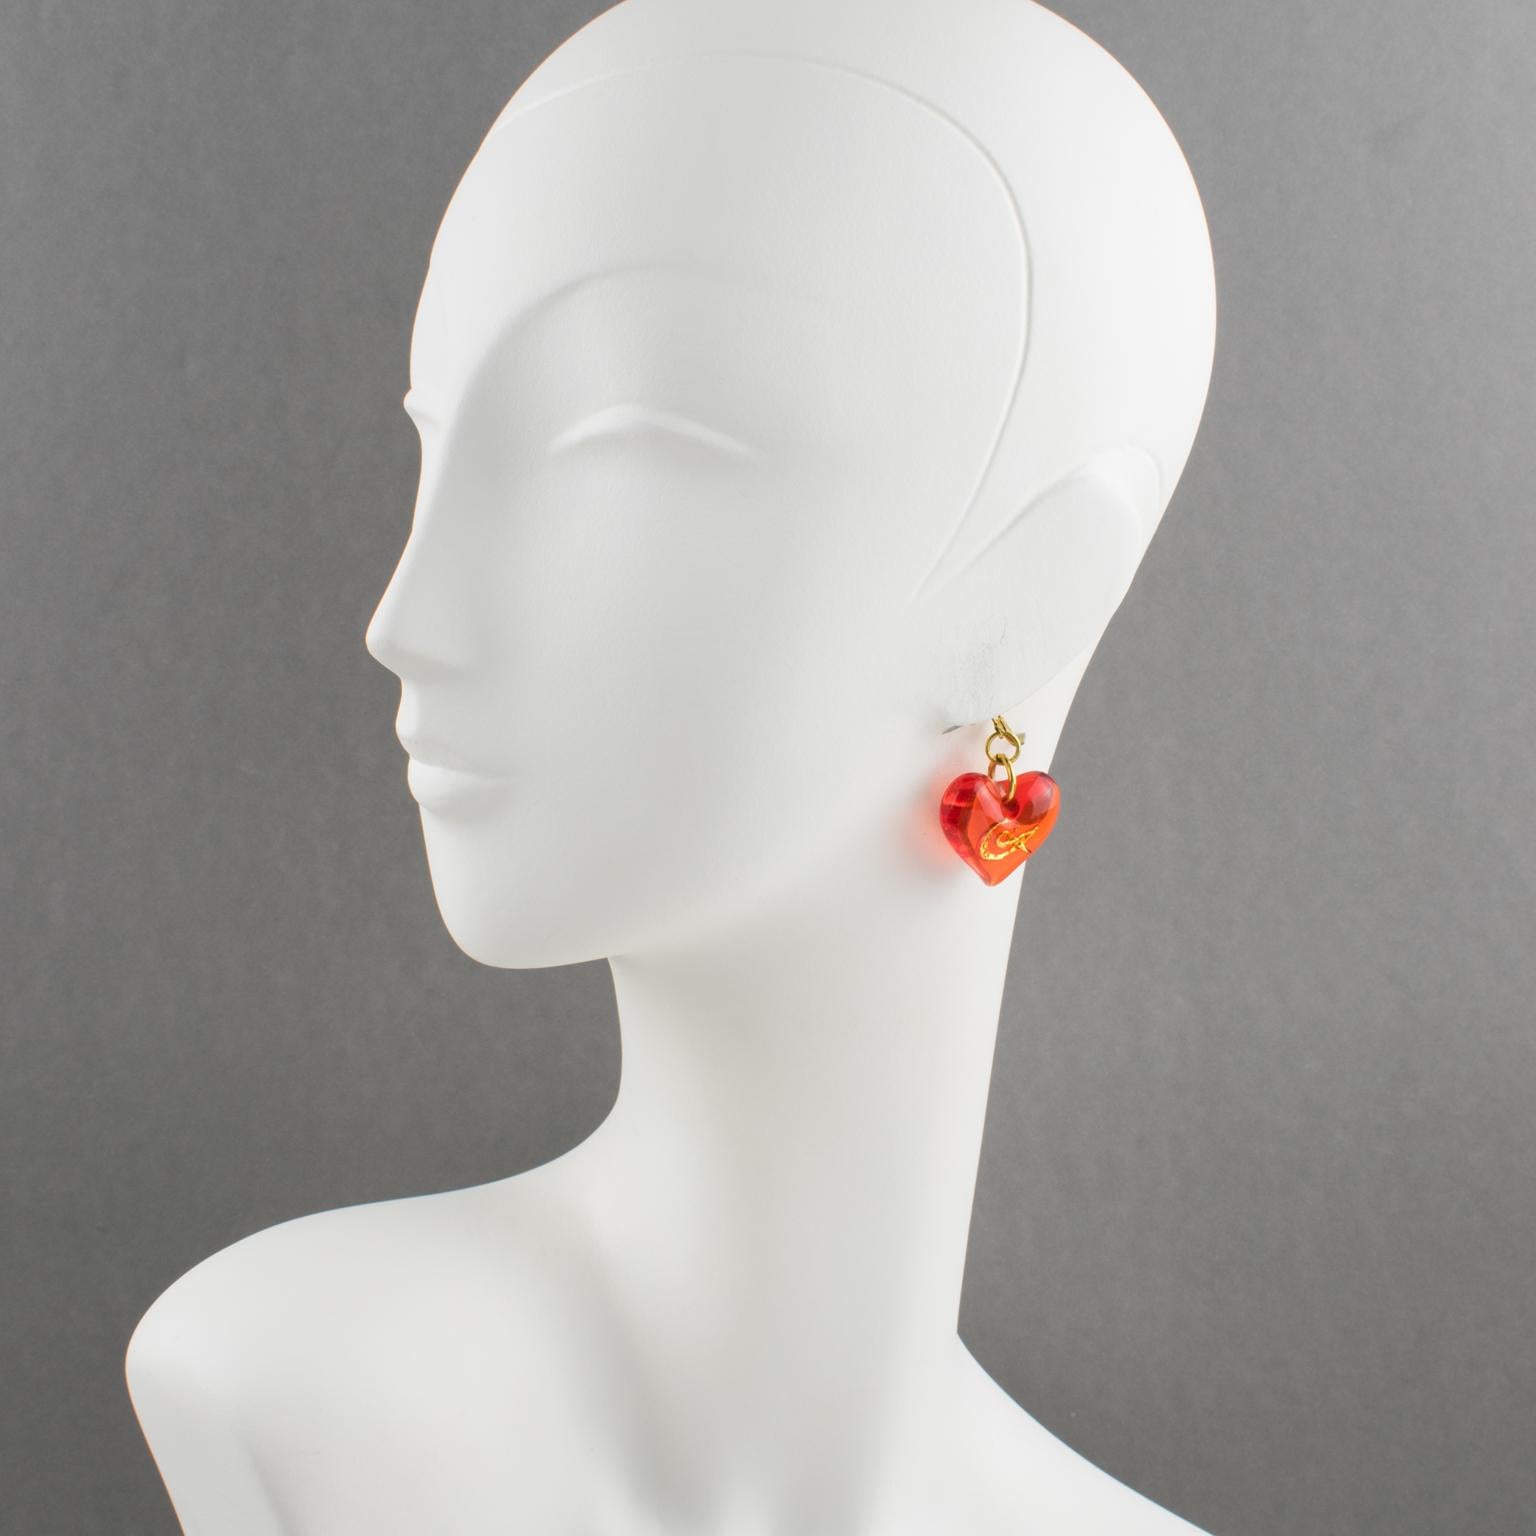 Diese hübschen Ohrringe von Christian Lacroix Paris sind aus Kunstharz gefertigt und bestehen aus einem dimensionalen, baumelnden Herz in transparentem Neonorange, das mit einem vergoldeten 